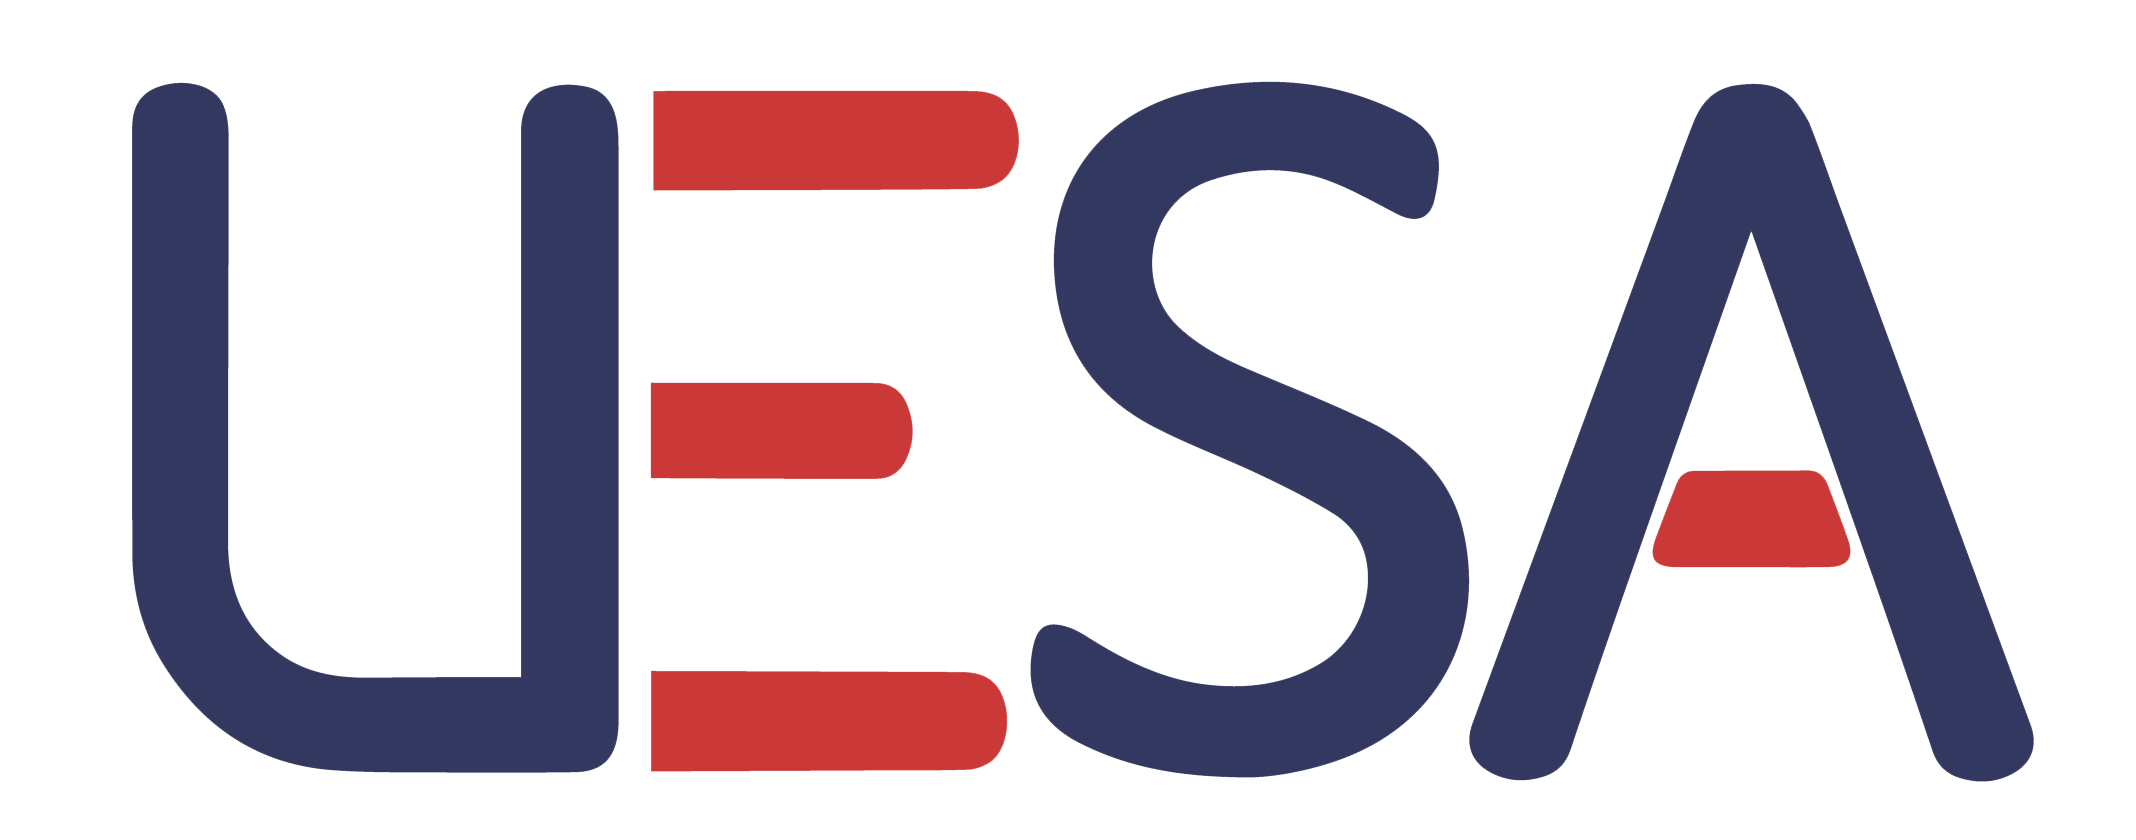 UESA - Unión Eléctrica SA.